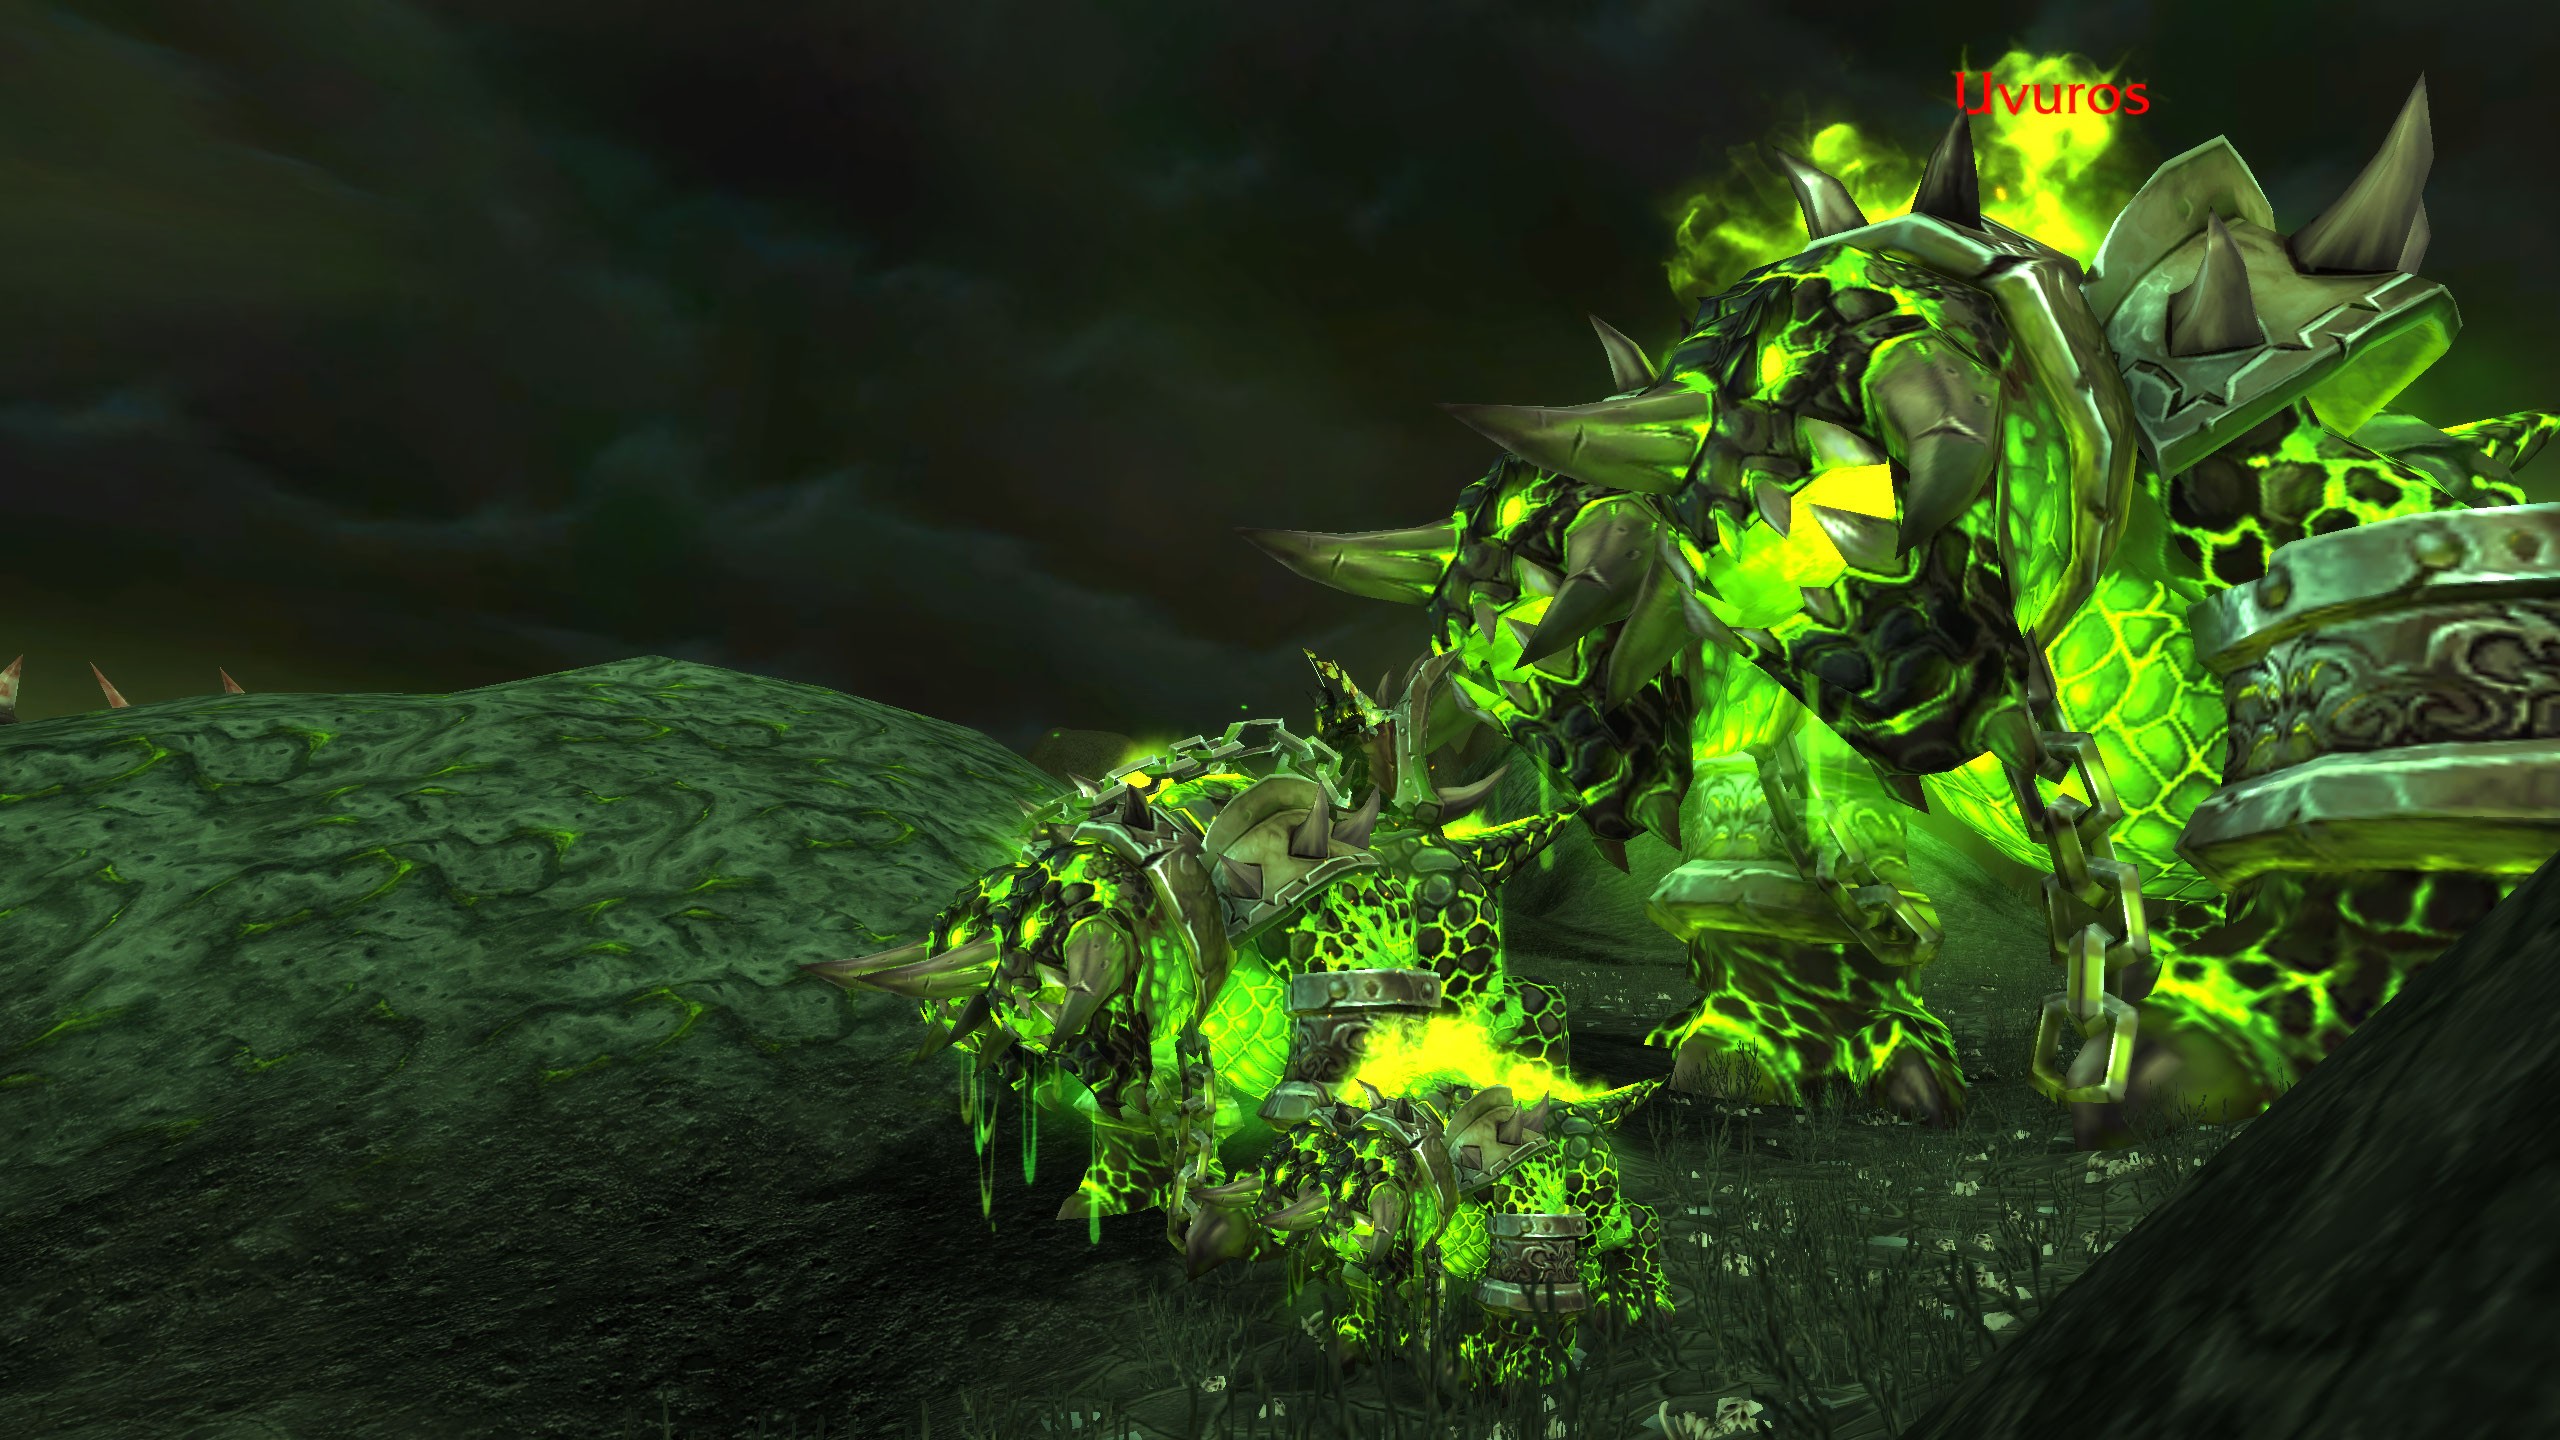 Hounds World Of Warcraft Green 2560x1440